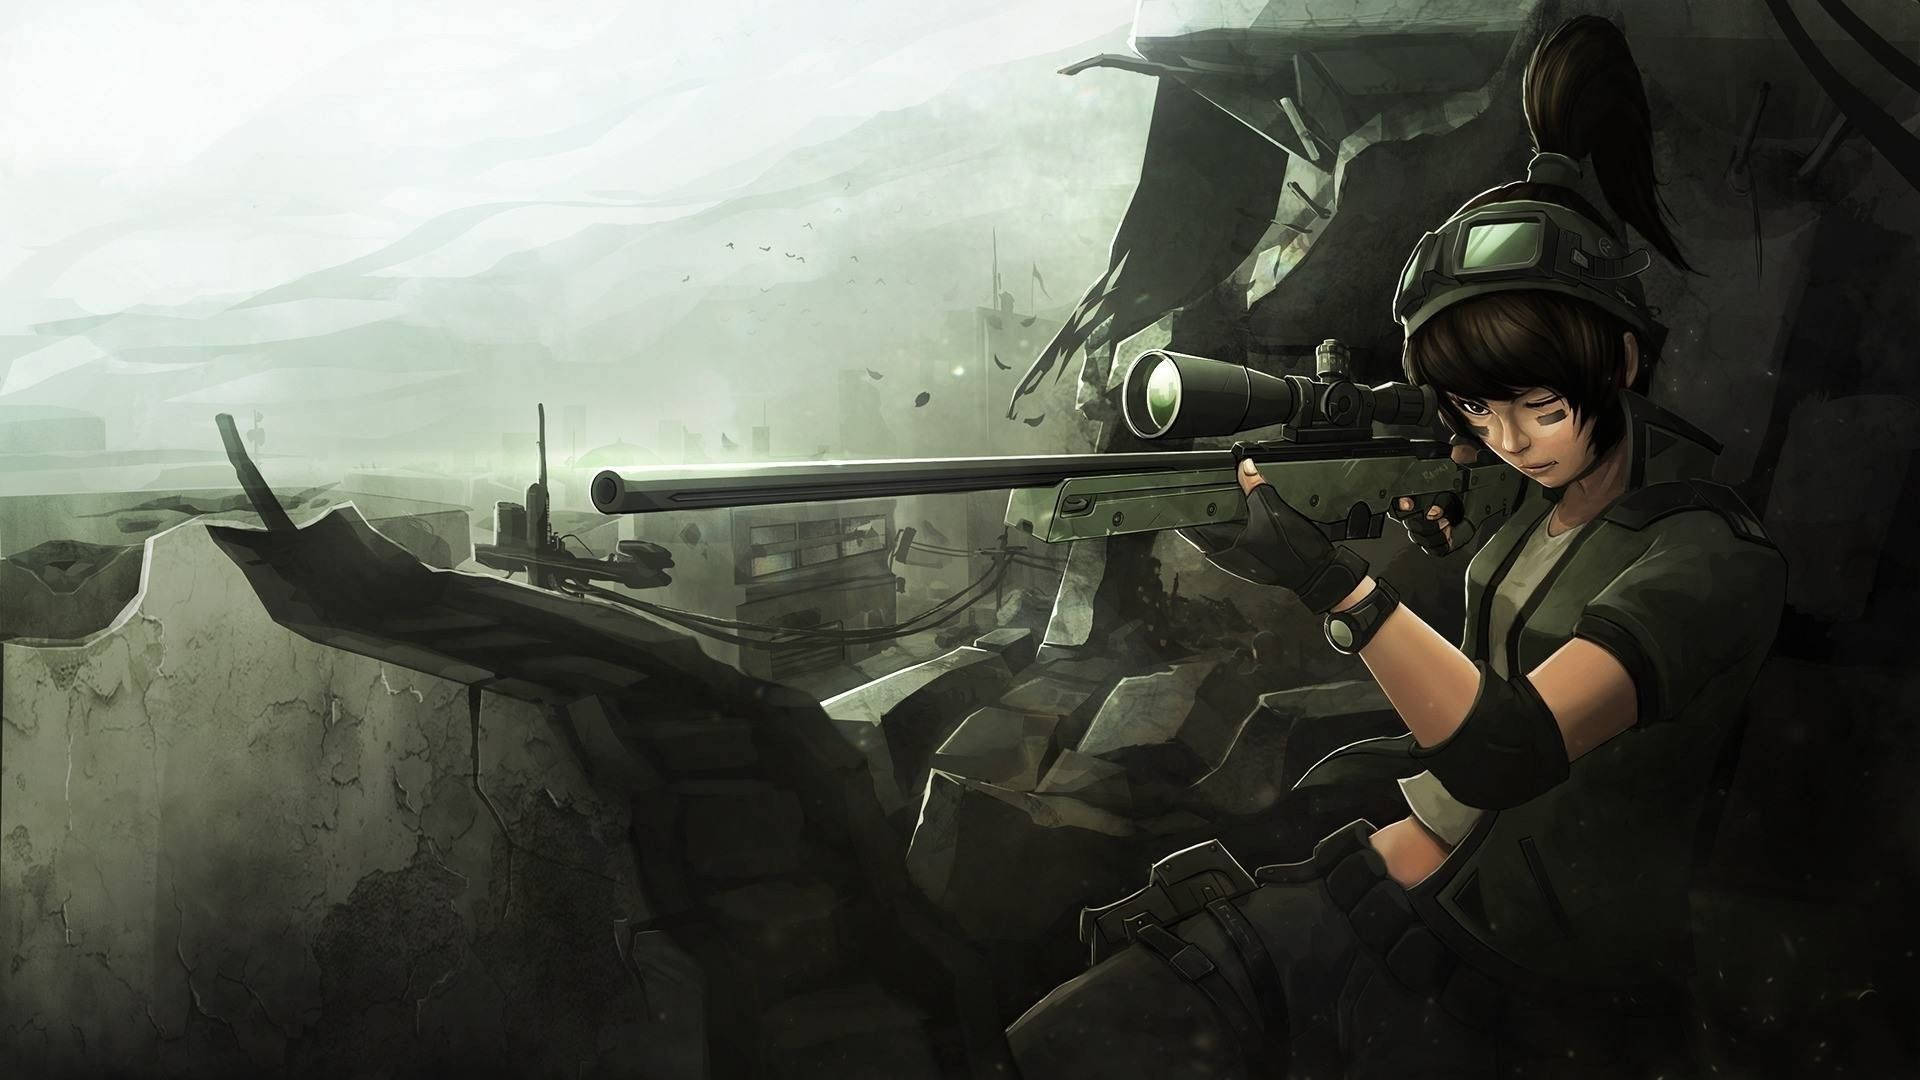 Anime Sniper Girl Wallpaper